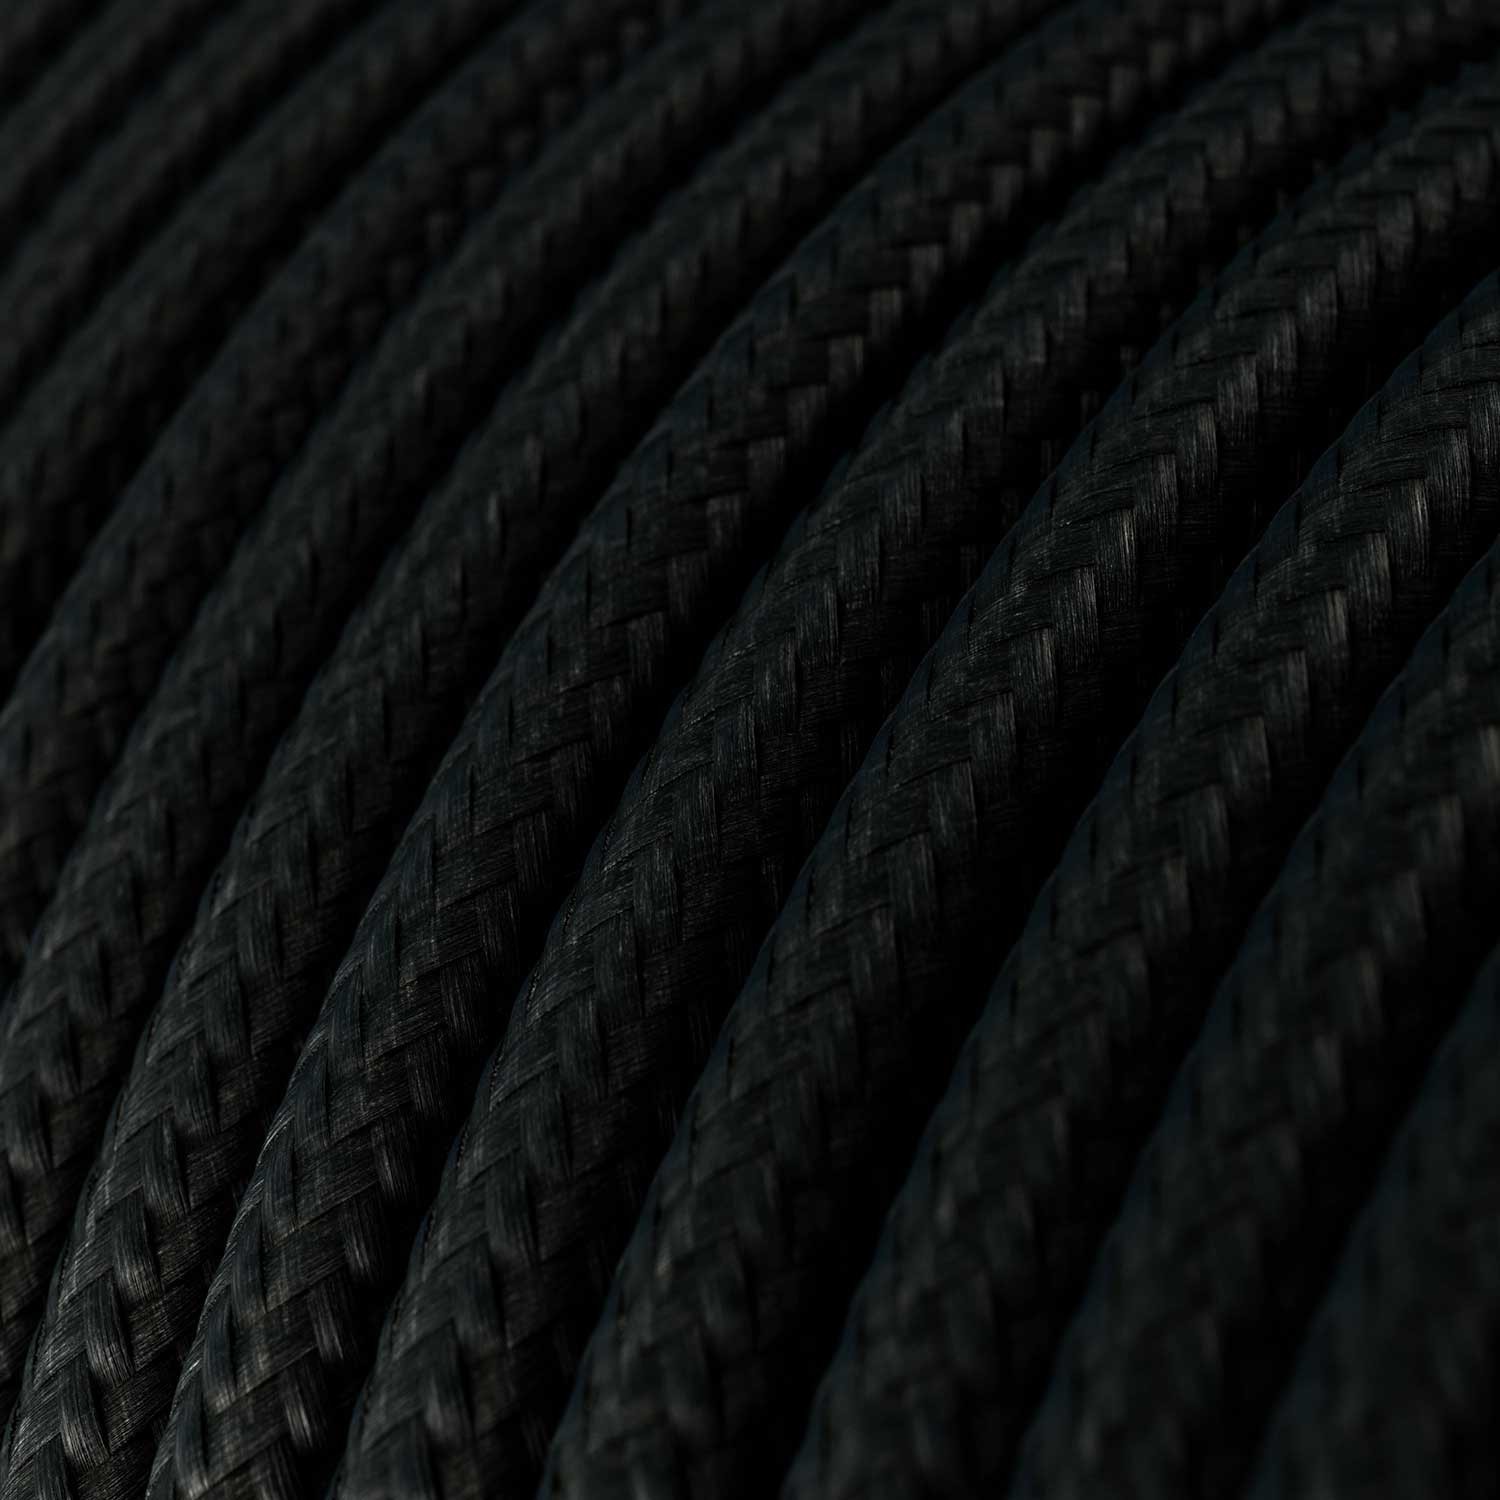 Ultra puha szilikon kábel fényes fekete szövetborítással - RM04 kerek 2x0,75 mm